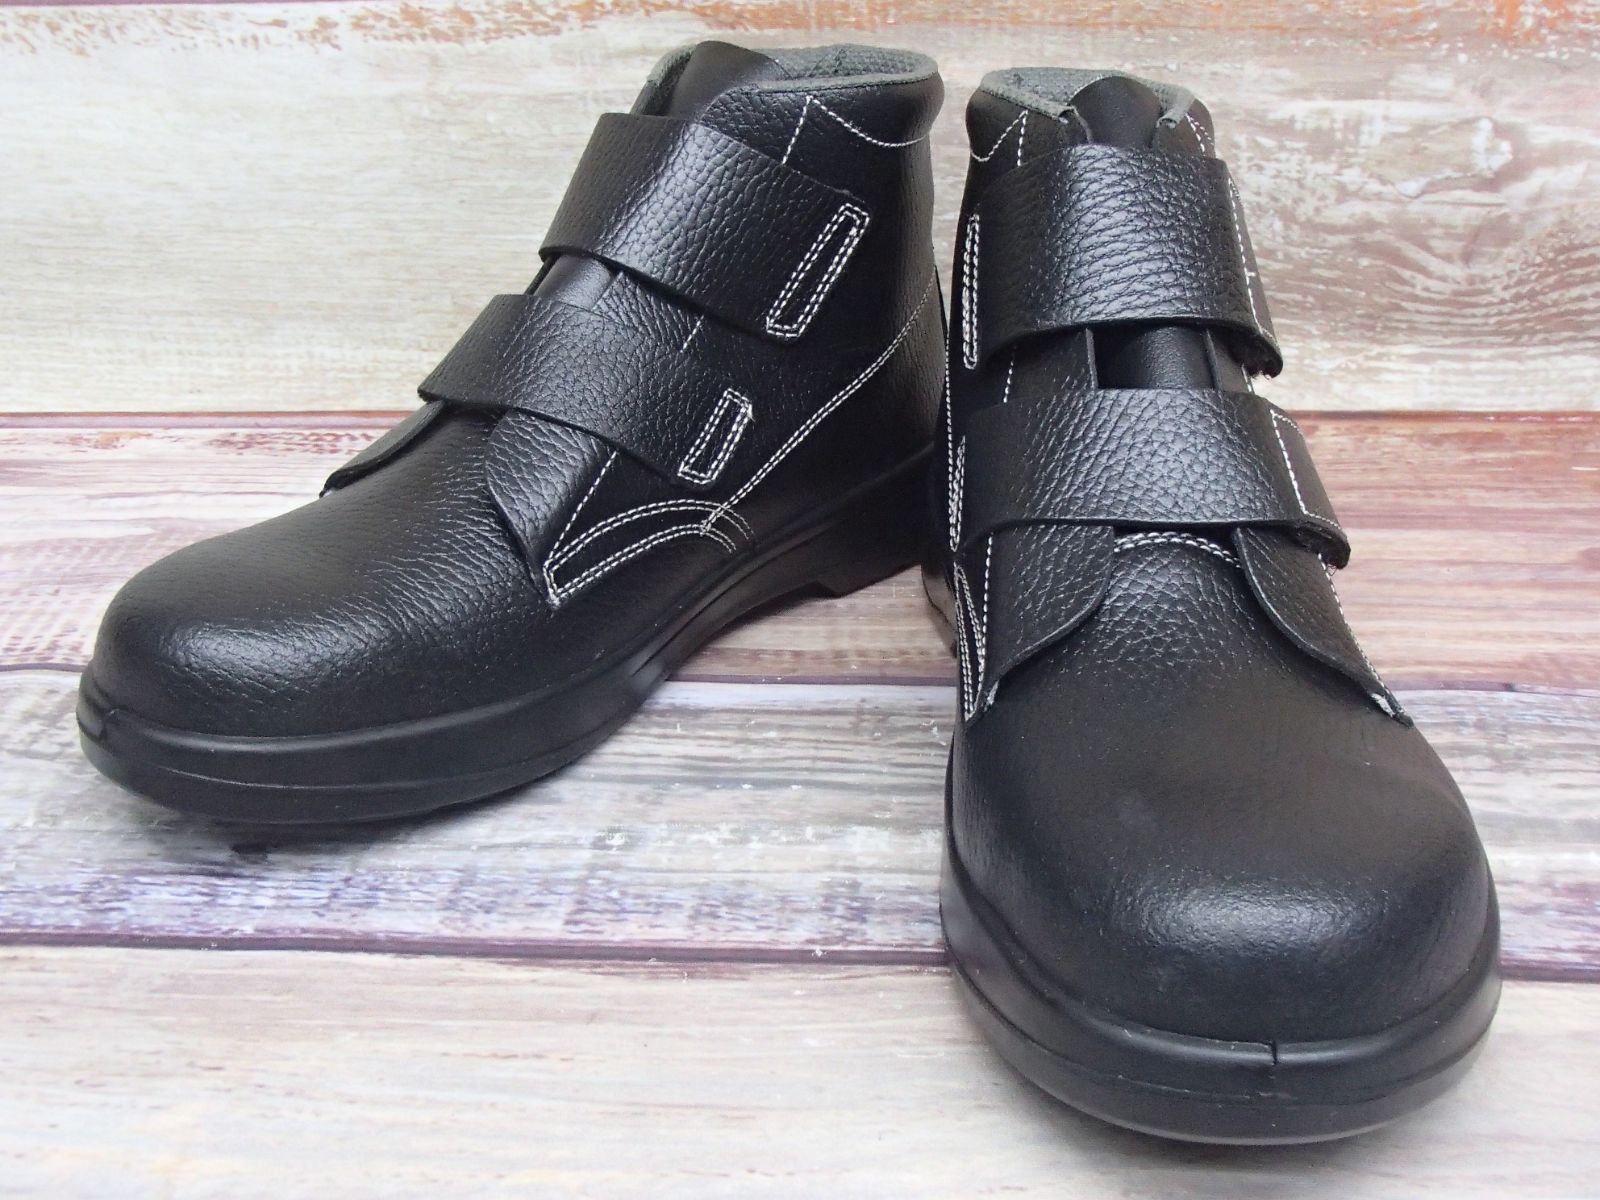 シモン 安全靴 AW28 着脱しやすい マジックタイプ SIMON - 制服、作業服